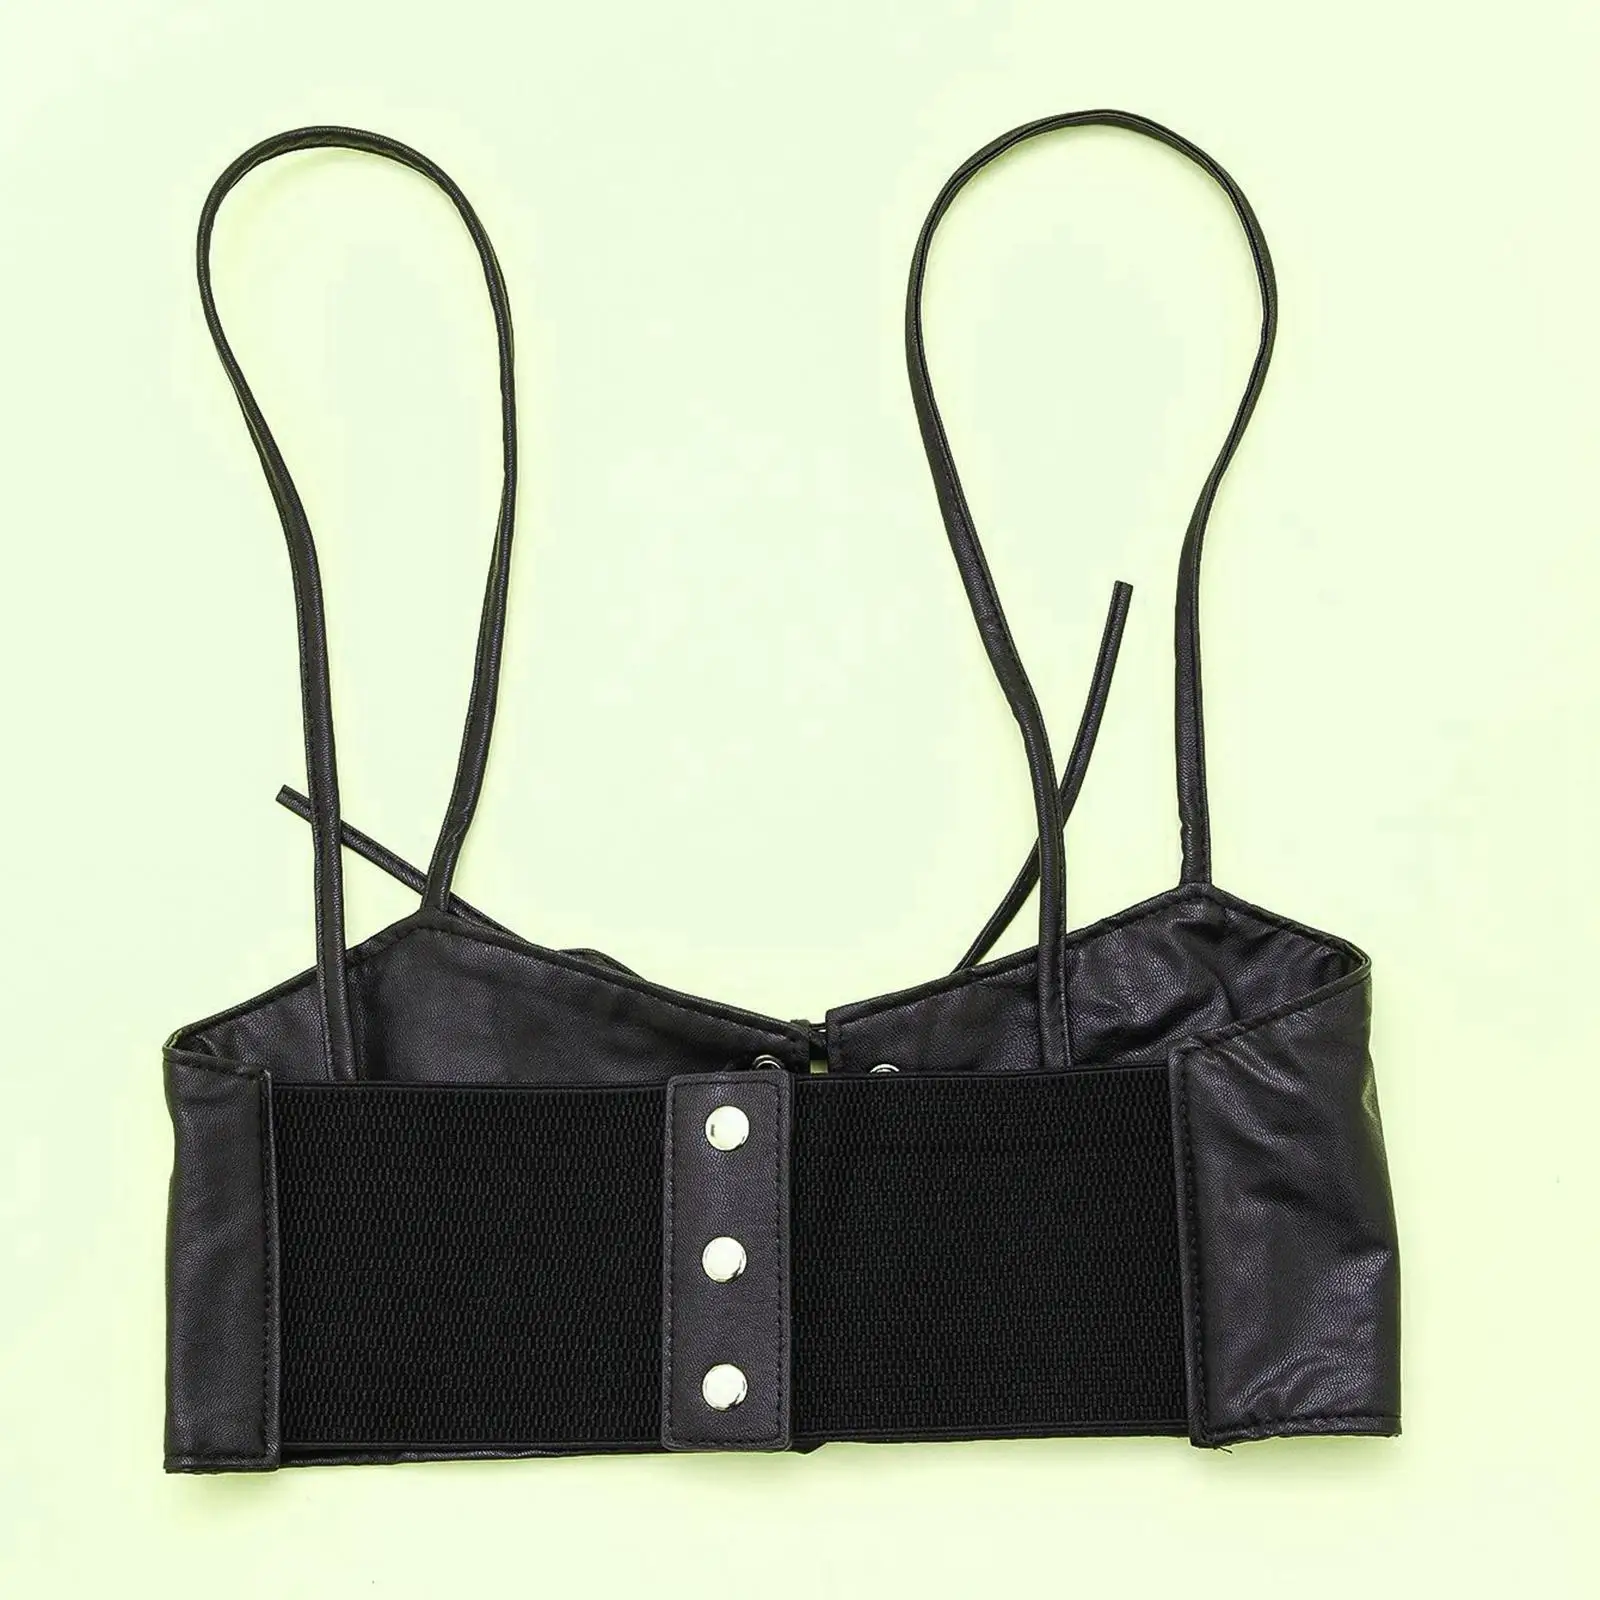 Fashion Women Waist Belt Elastic Underbust Corset Steampunk Cincher for Dress Ladies Adjustable with Straps Cummerbund Waistband